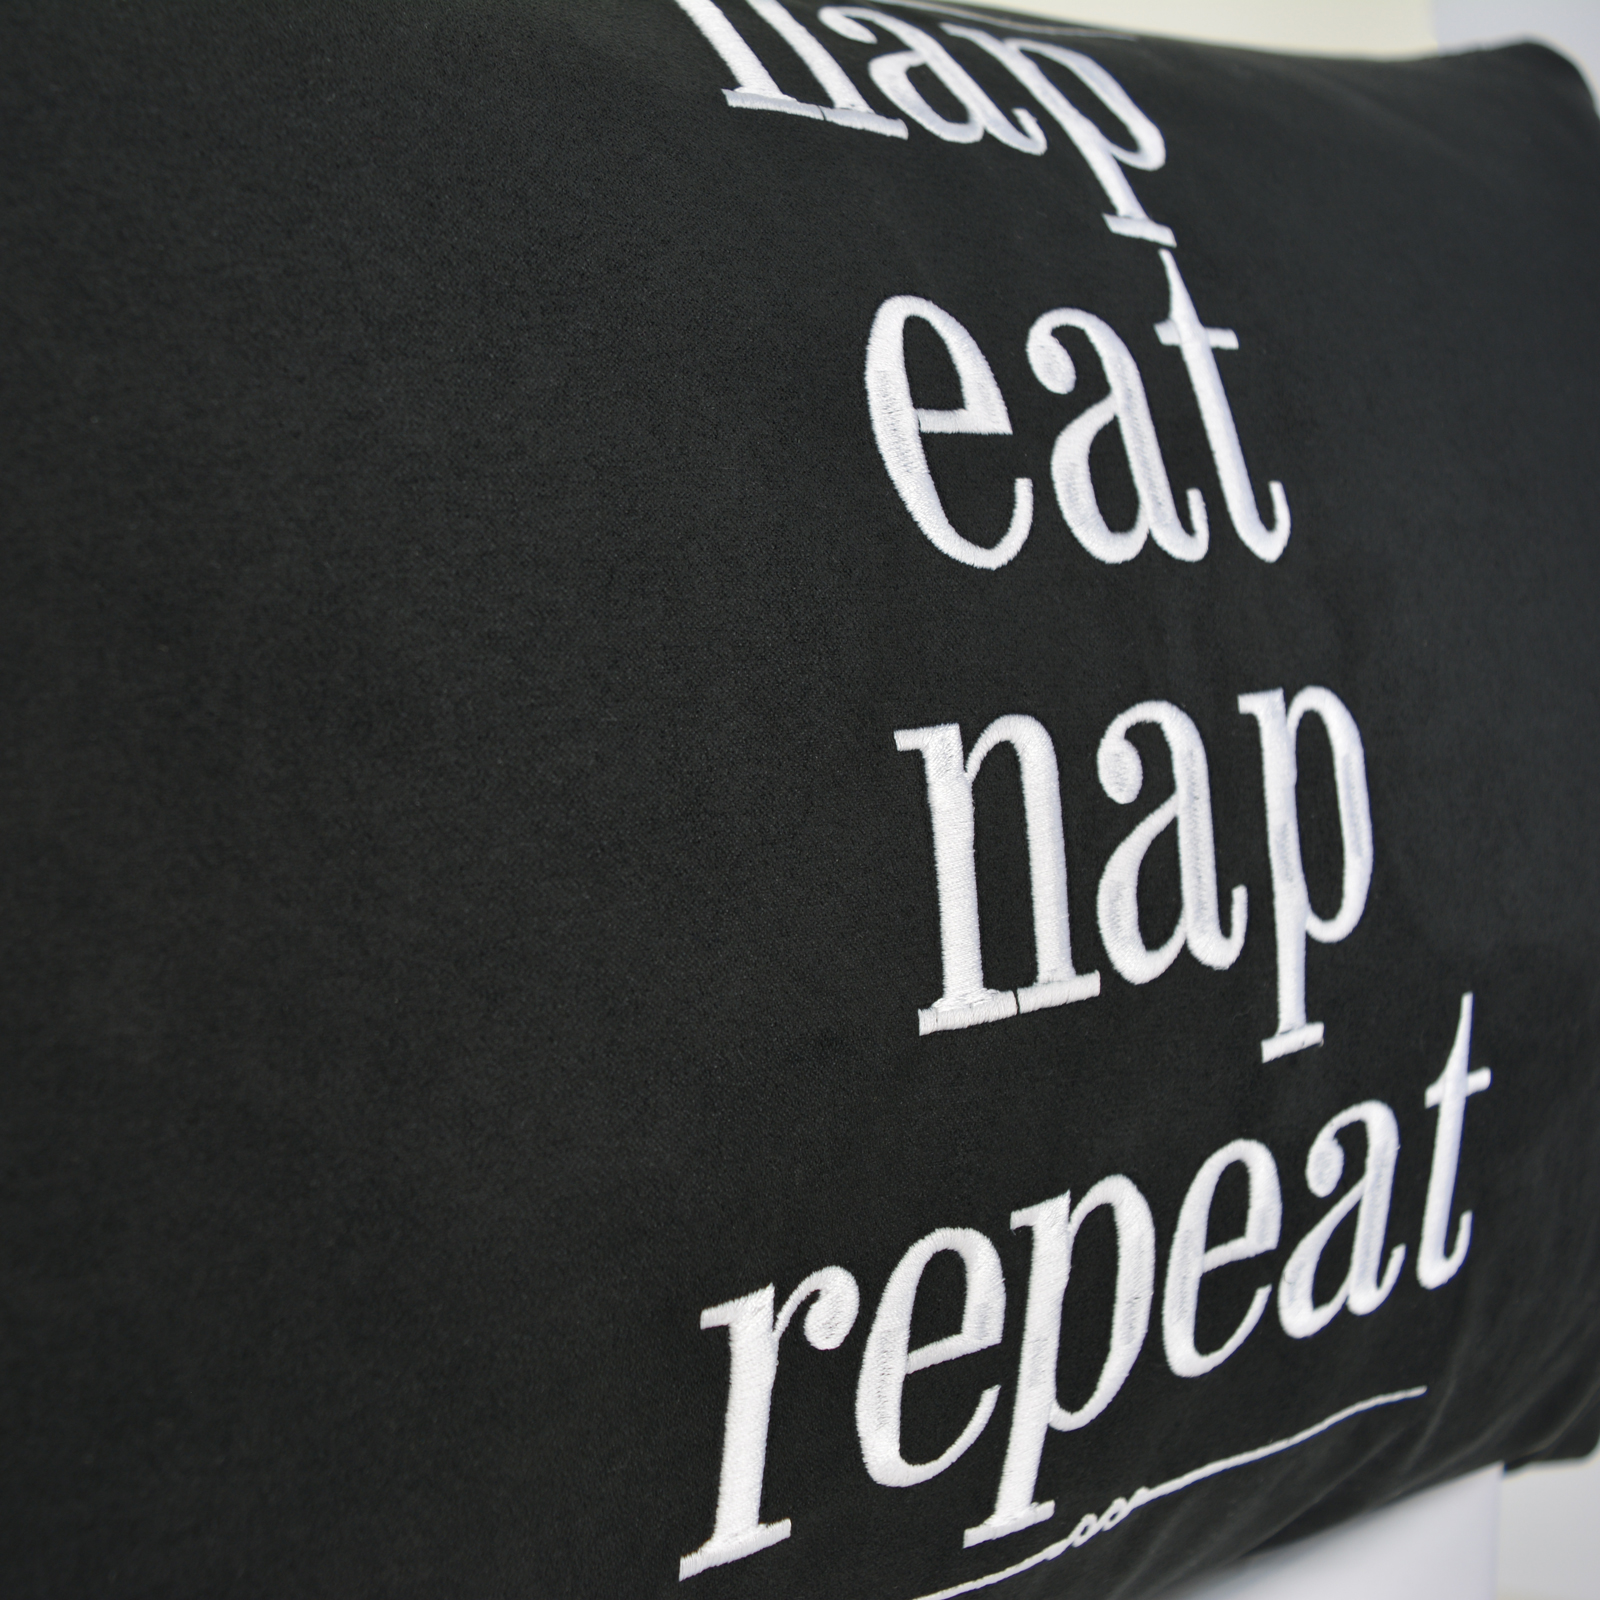 nap eat nap repeat - Kissen